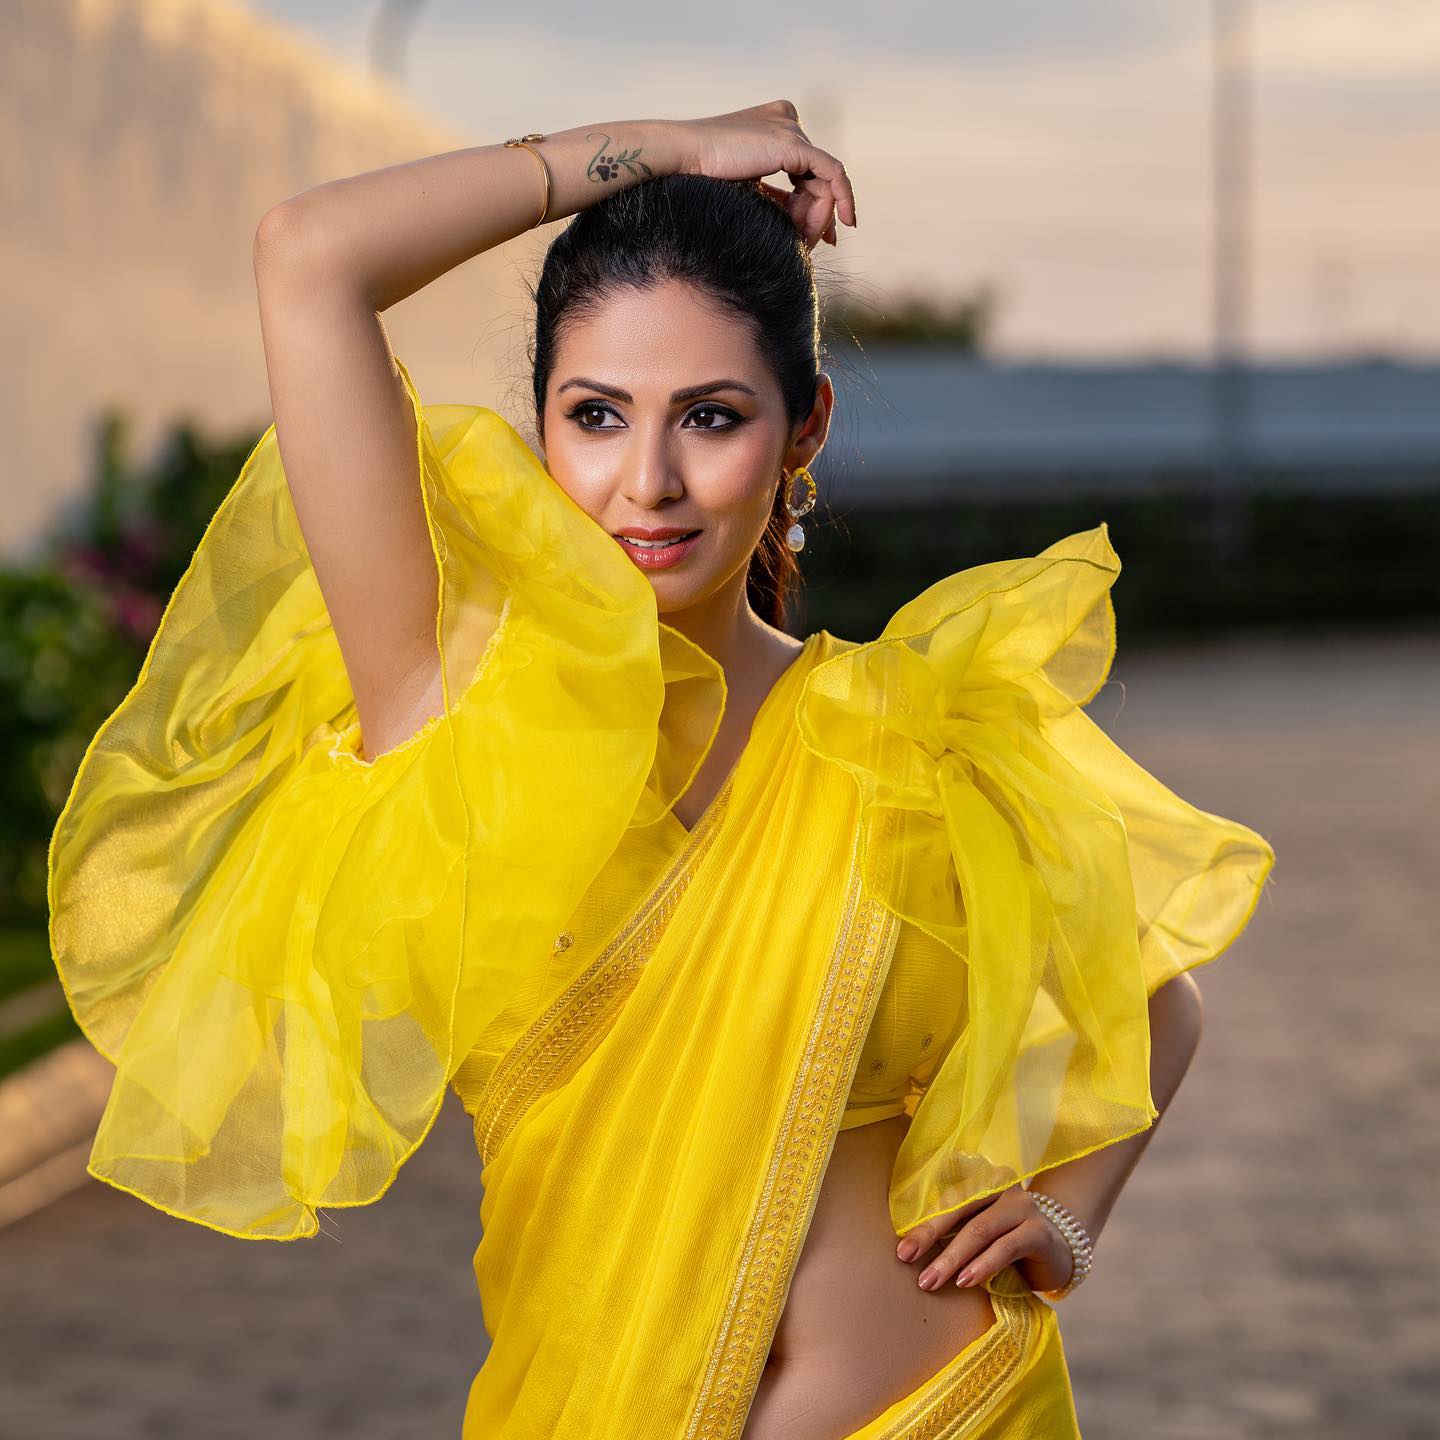 Sadha steamy looks in yellow saree